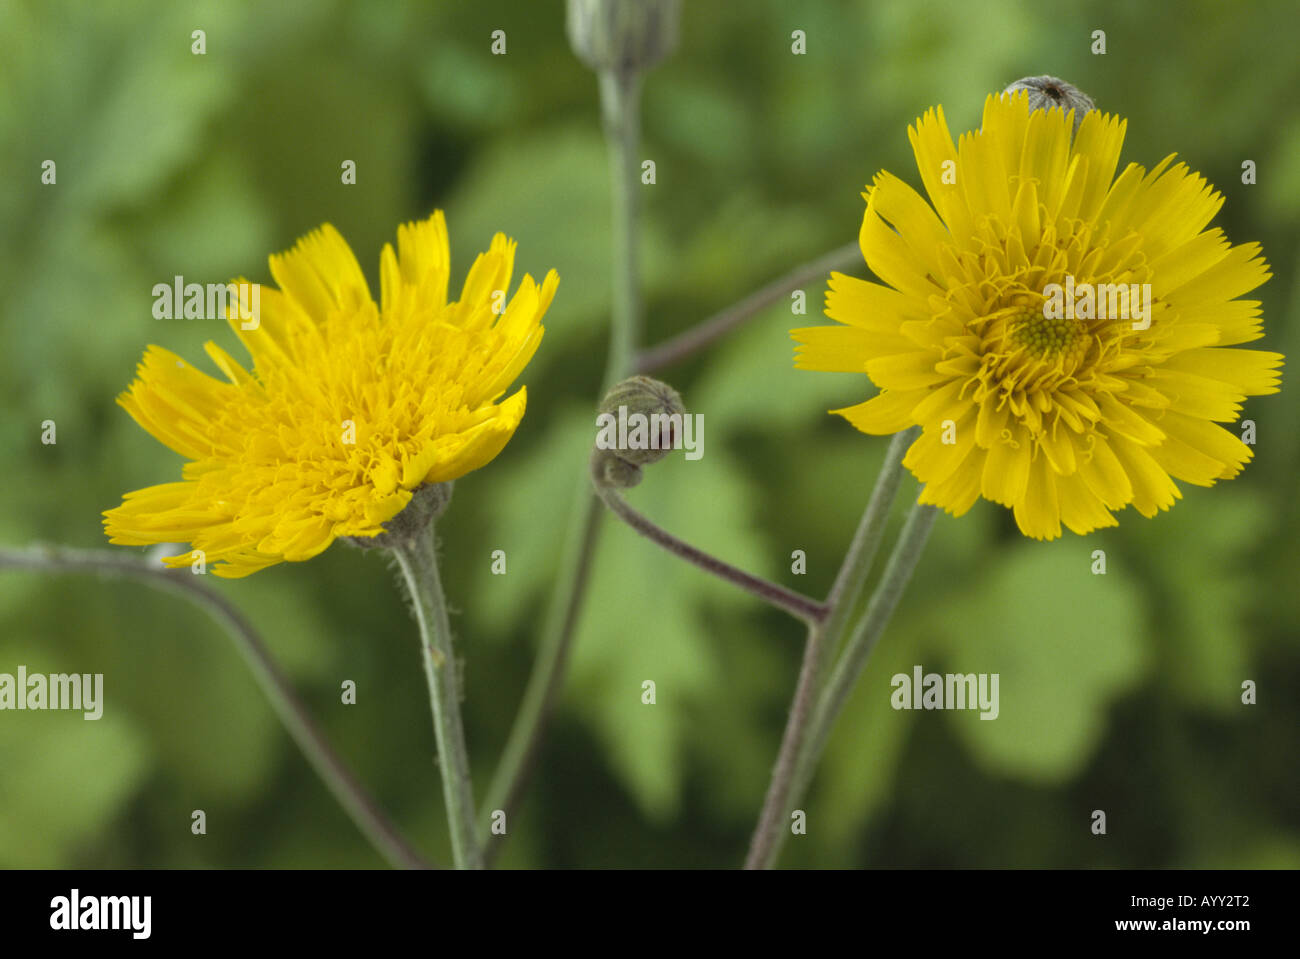 Hieracium lanatum. (Hawkweed) Close up of two yellow flowers. Stock Photo